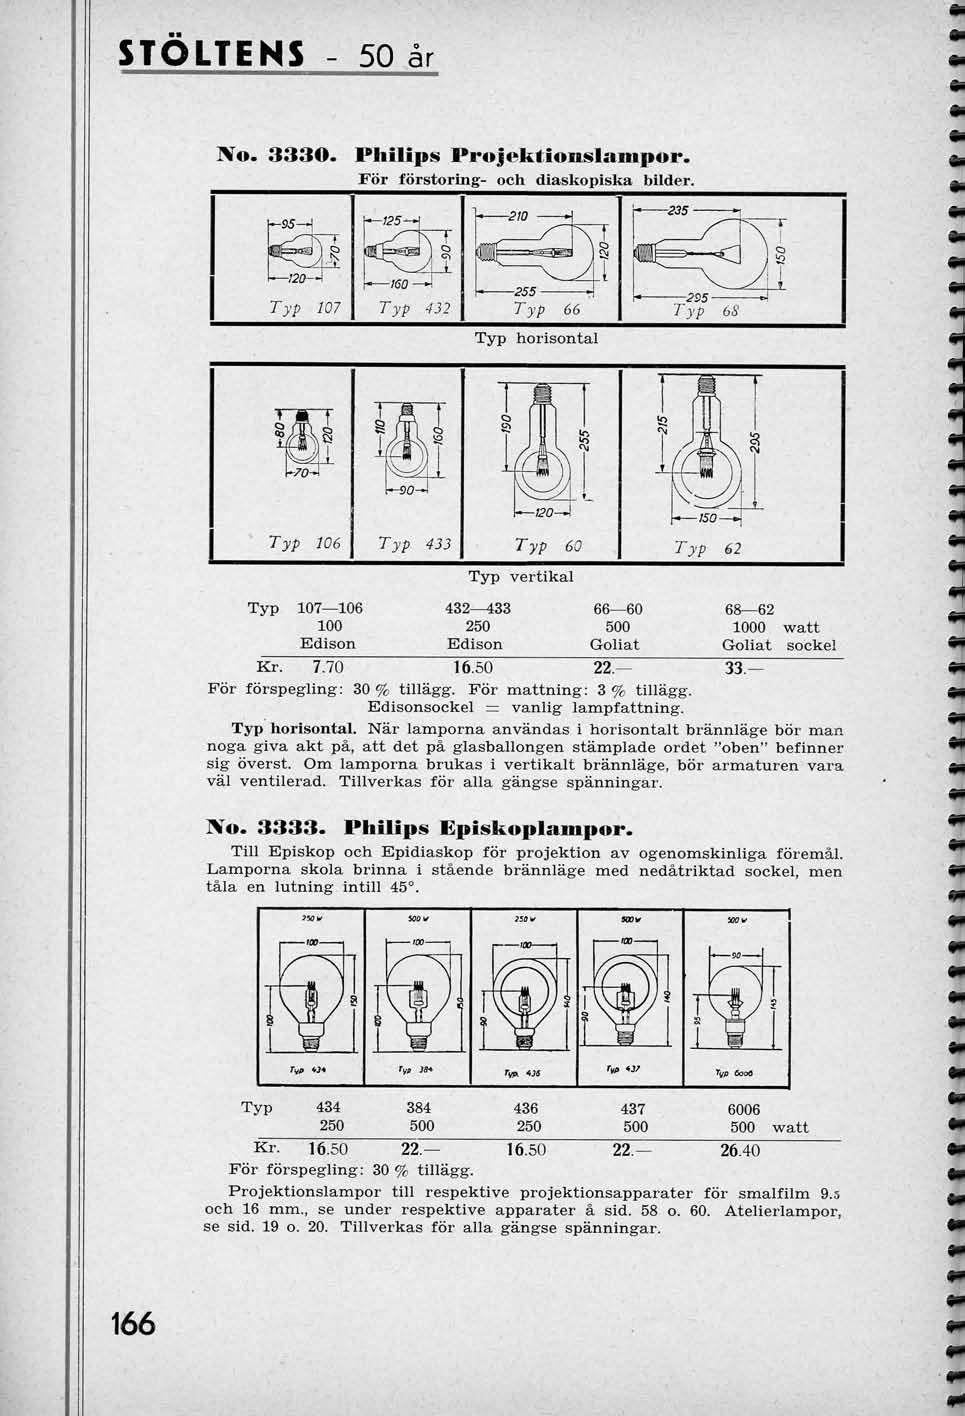 STOLTENS 50 ar No. 3330. Philips Projel^tionslampor. For forstorlng- och diaskopiska bilder.